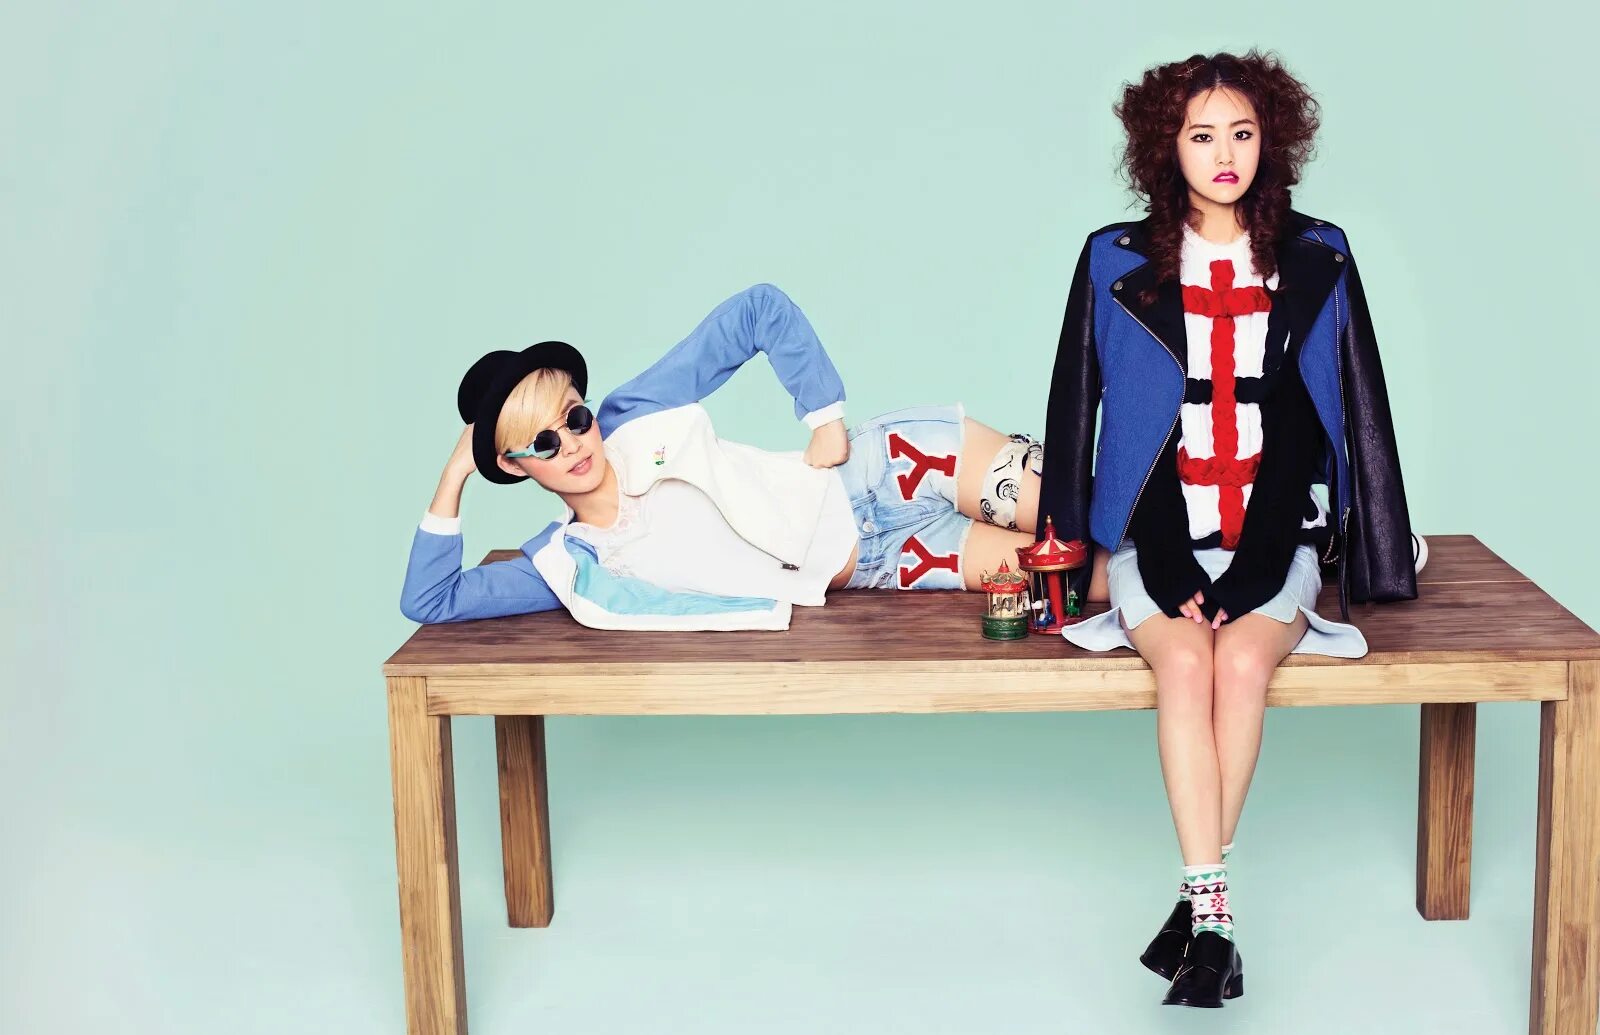 Issue f. So Yoon певица и РМ. Min yoonki в рубашке. Картинки из клипа so! Yoon _ RM of BT.